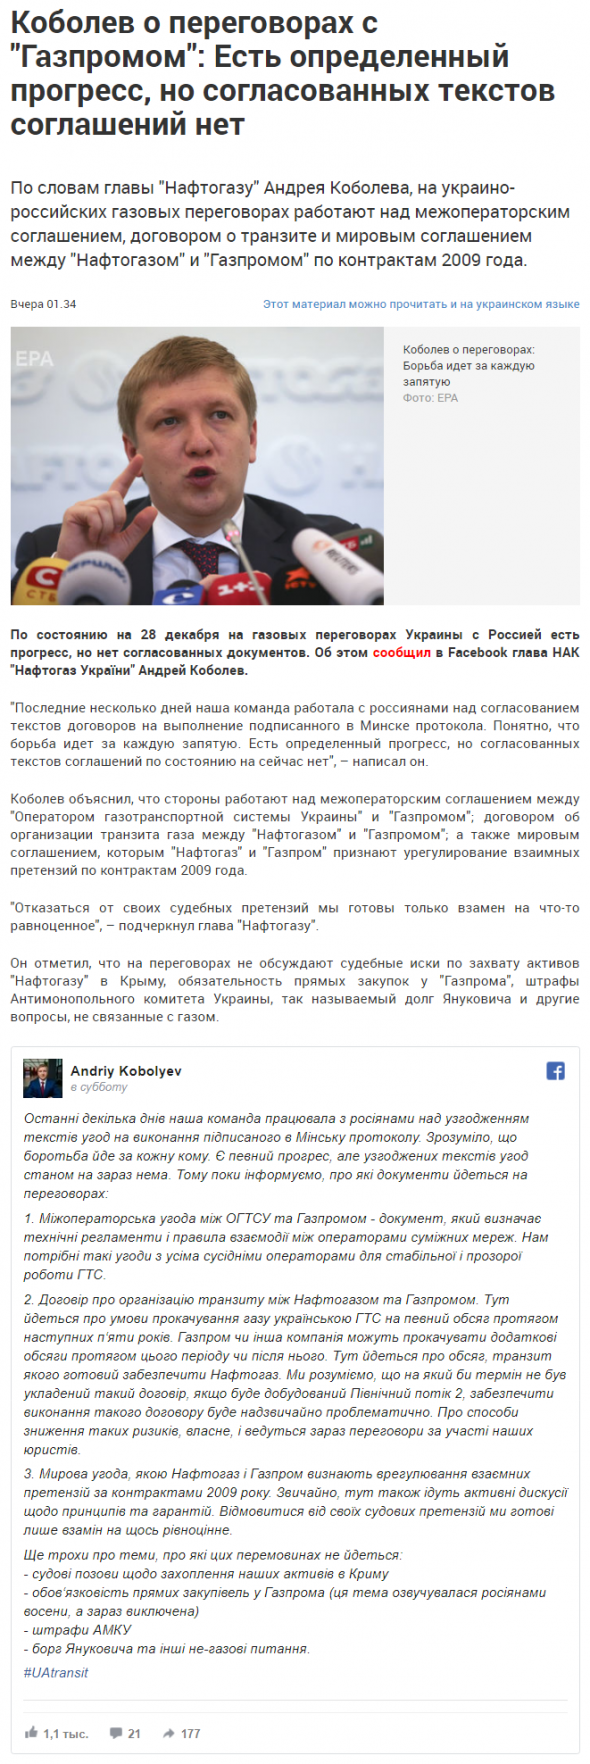 Глава Нафтогаза о перговорах с Газпромом: Борьба идет "за каждую запятую"